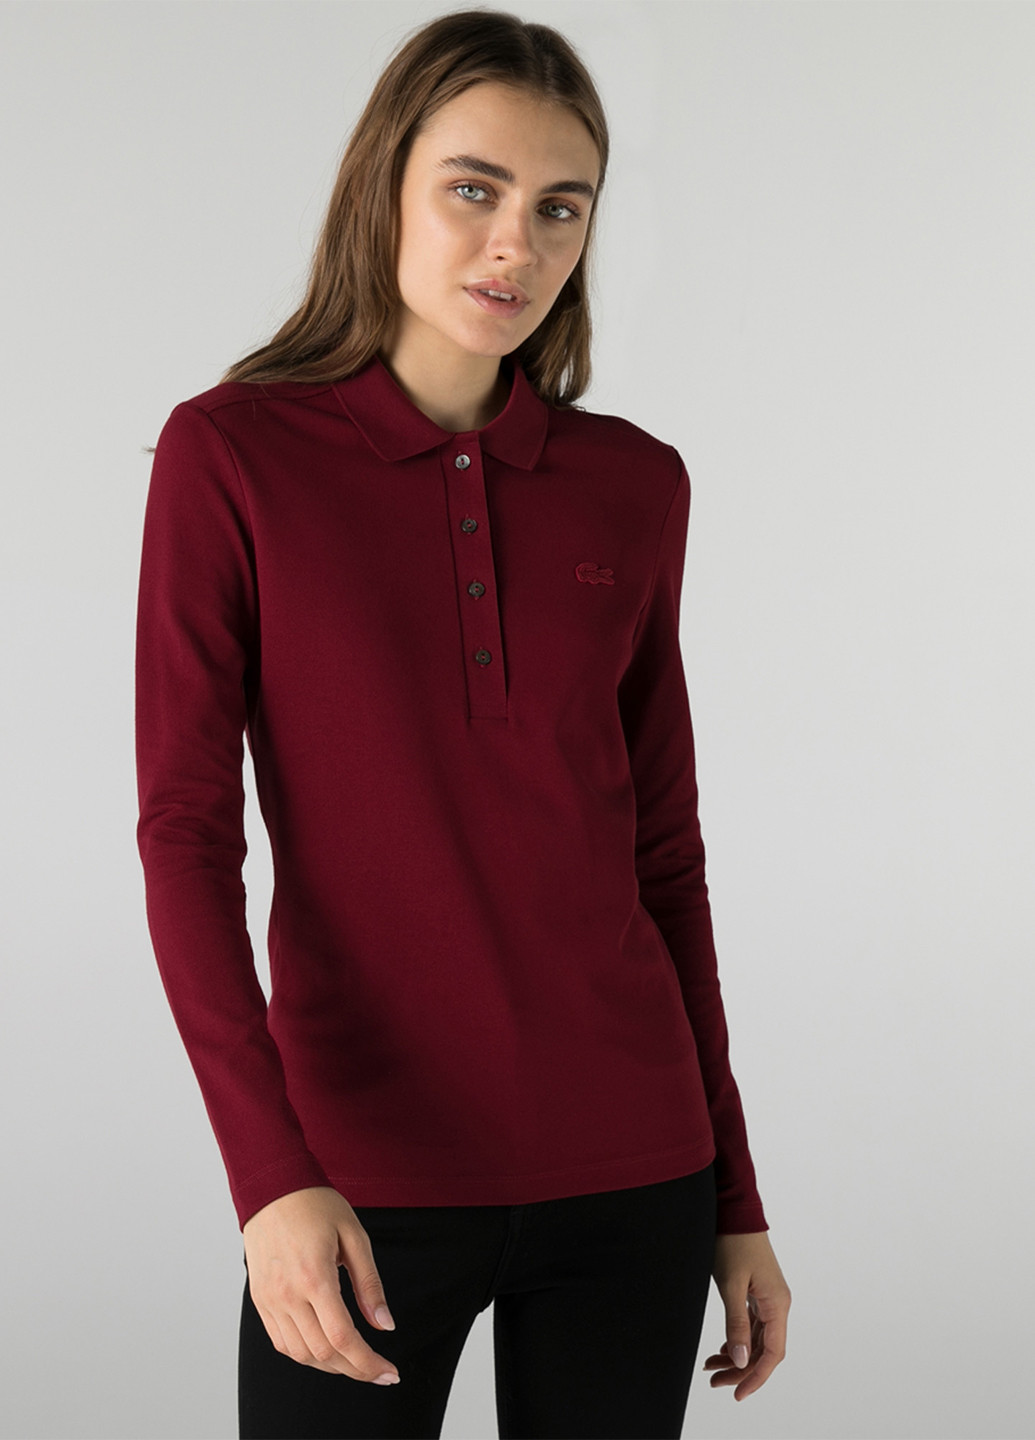 Бордовая женская футболка-поло Lacoste с логотипом